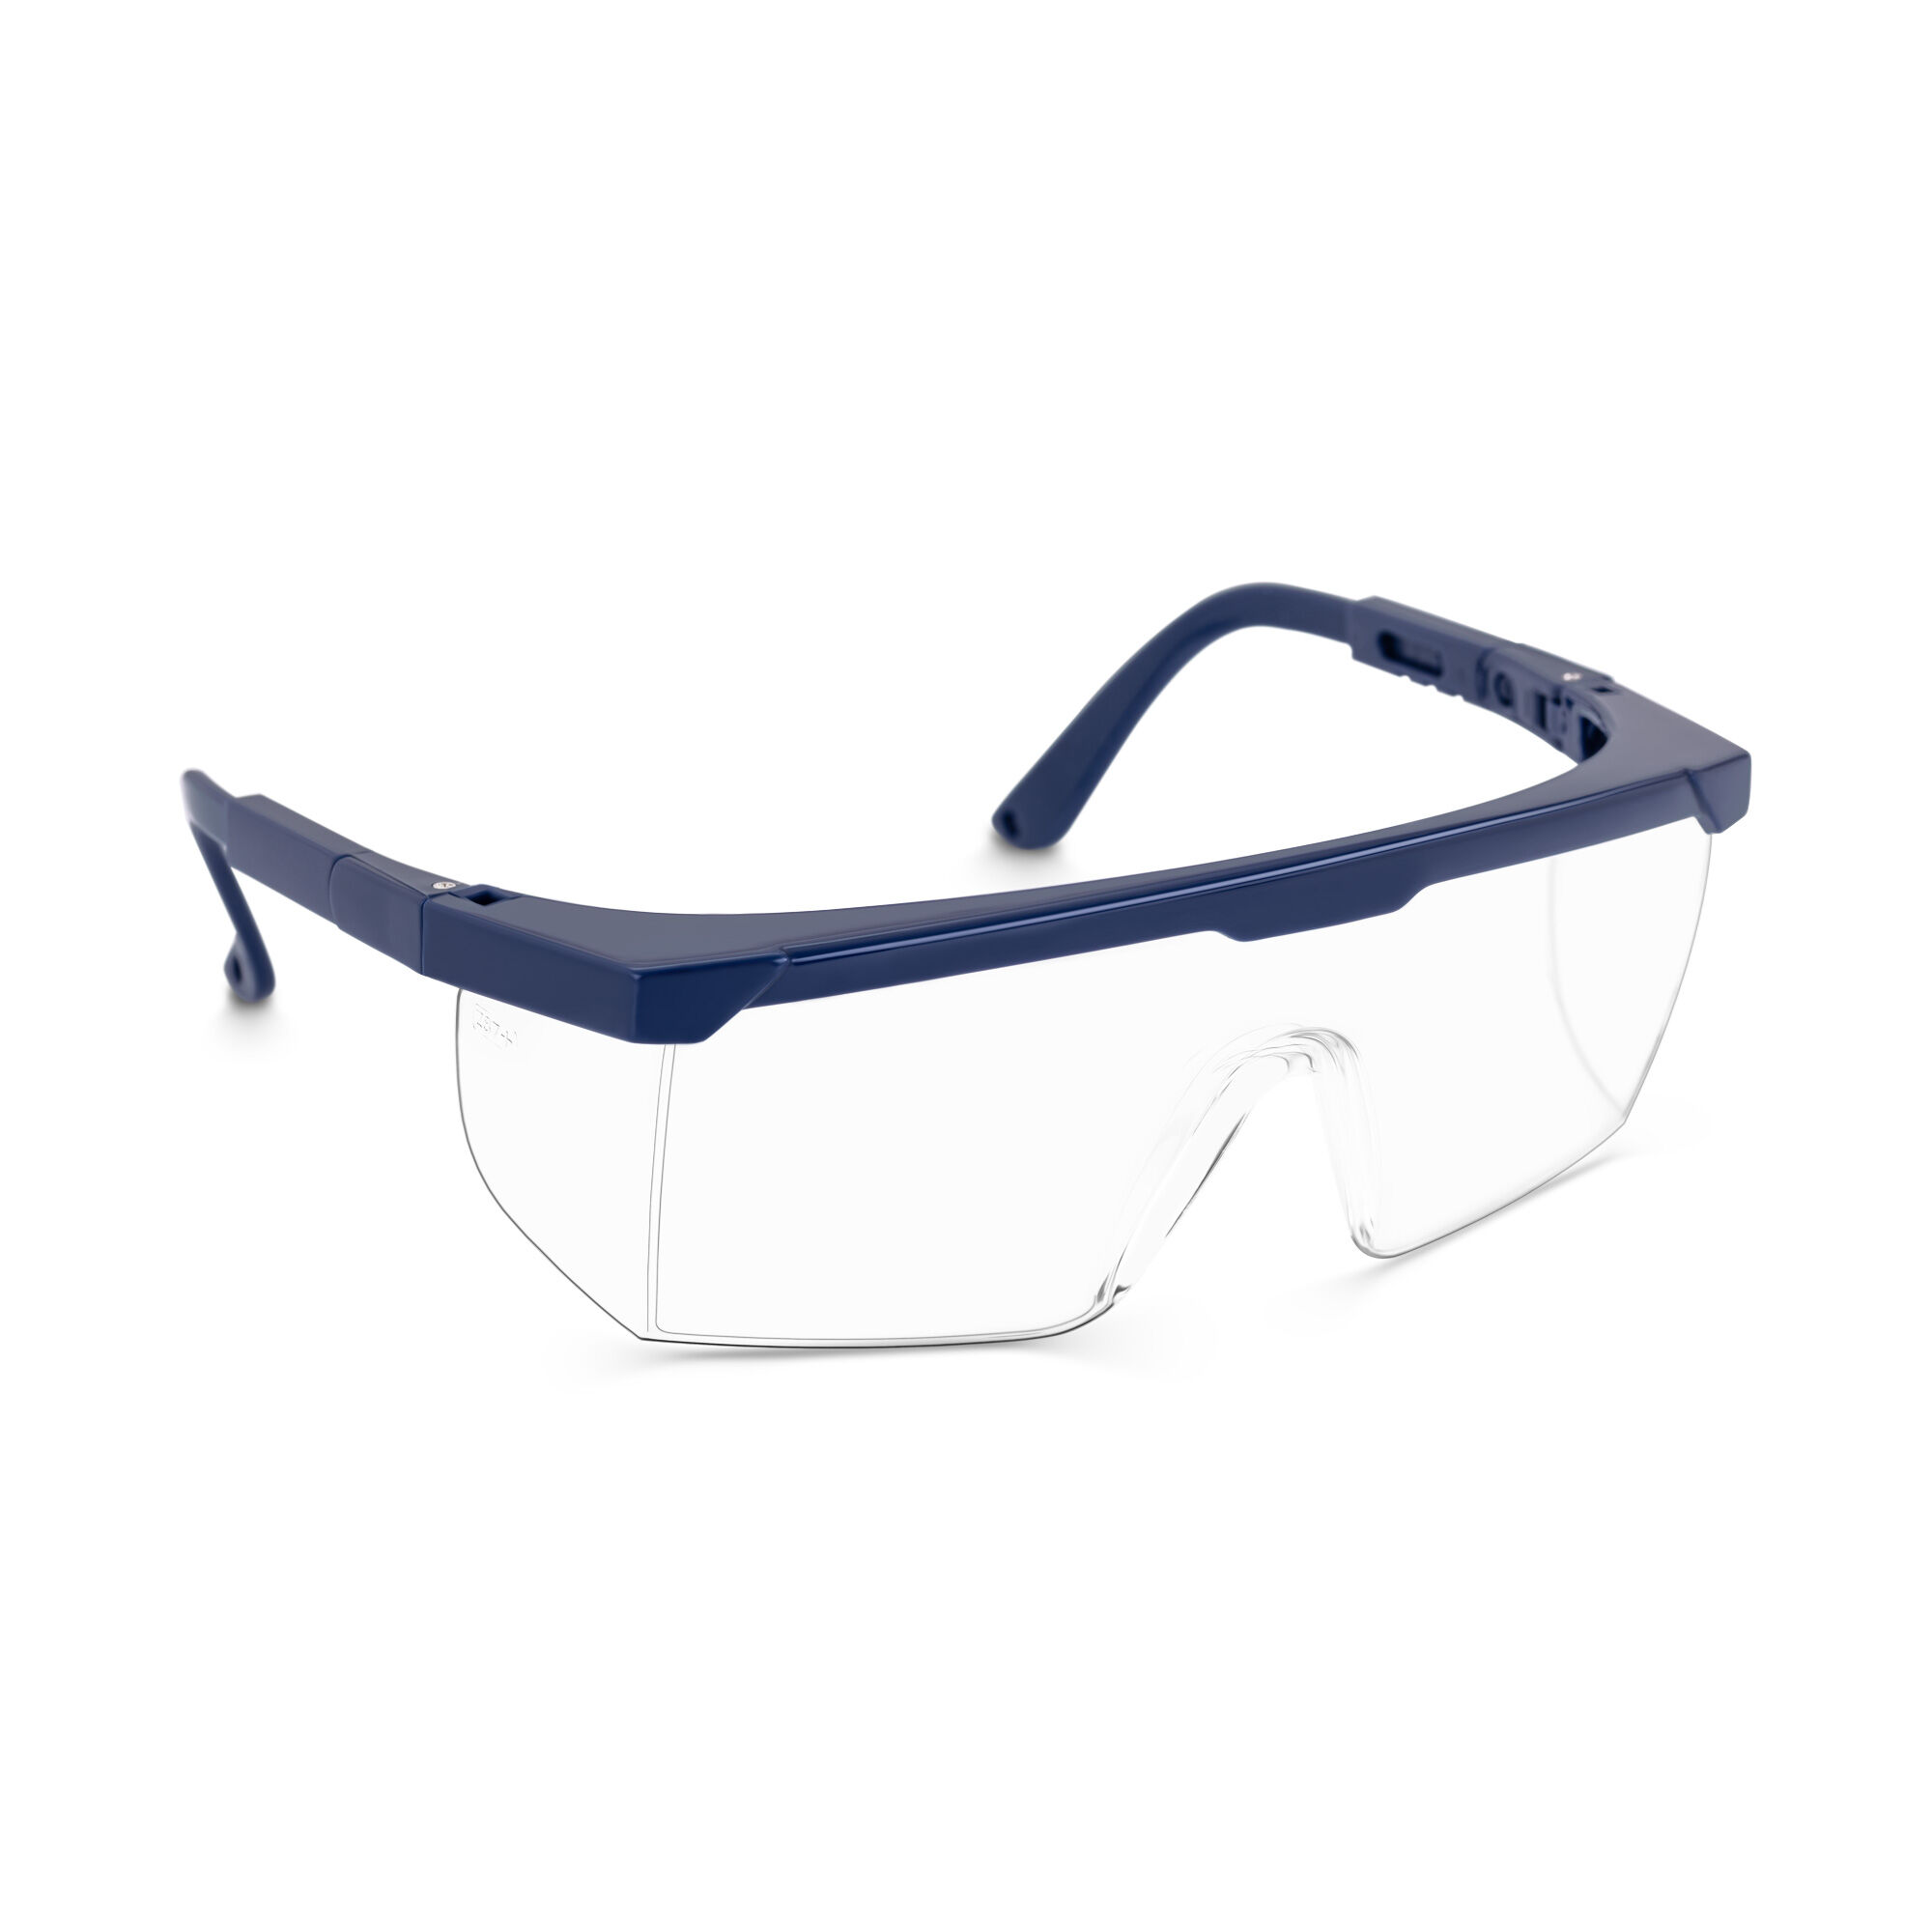 TECTOR Schutzbrille - klar - EN166 - verstellbar - 10 Stück 18000496